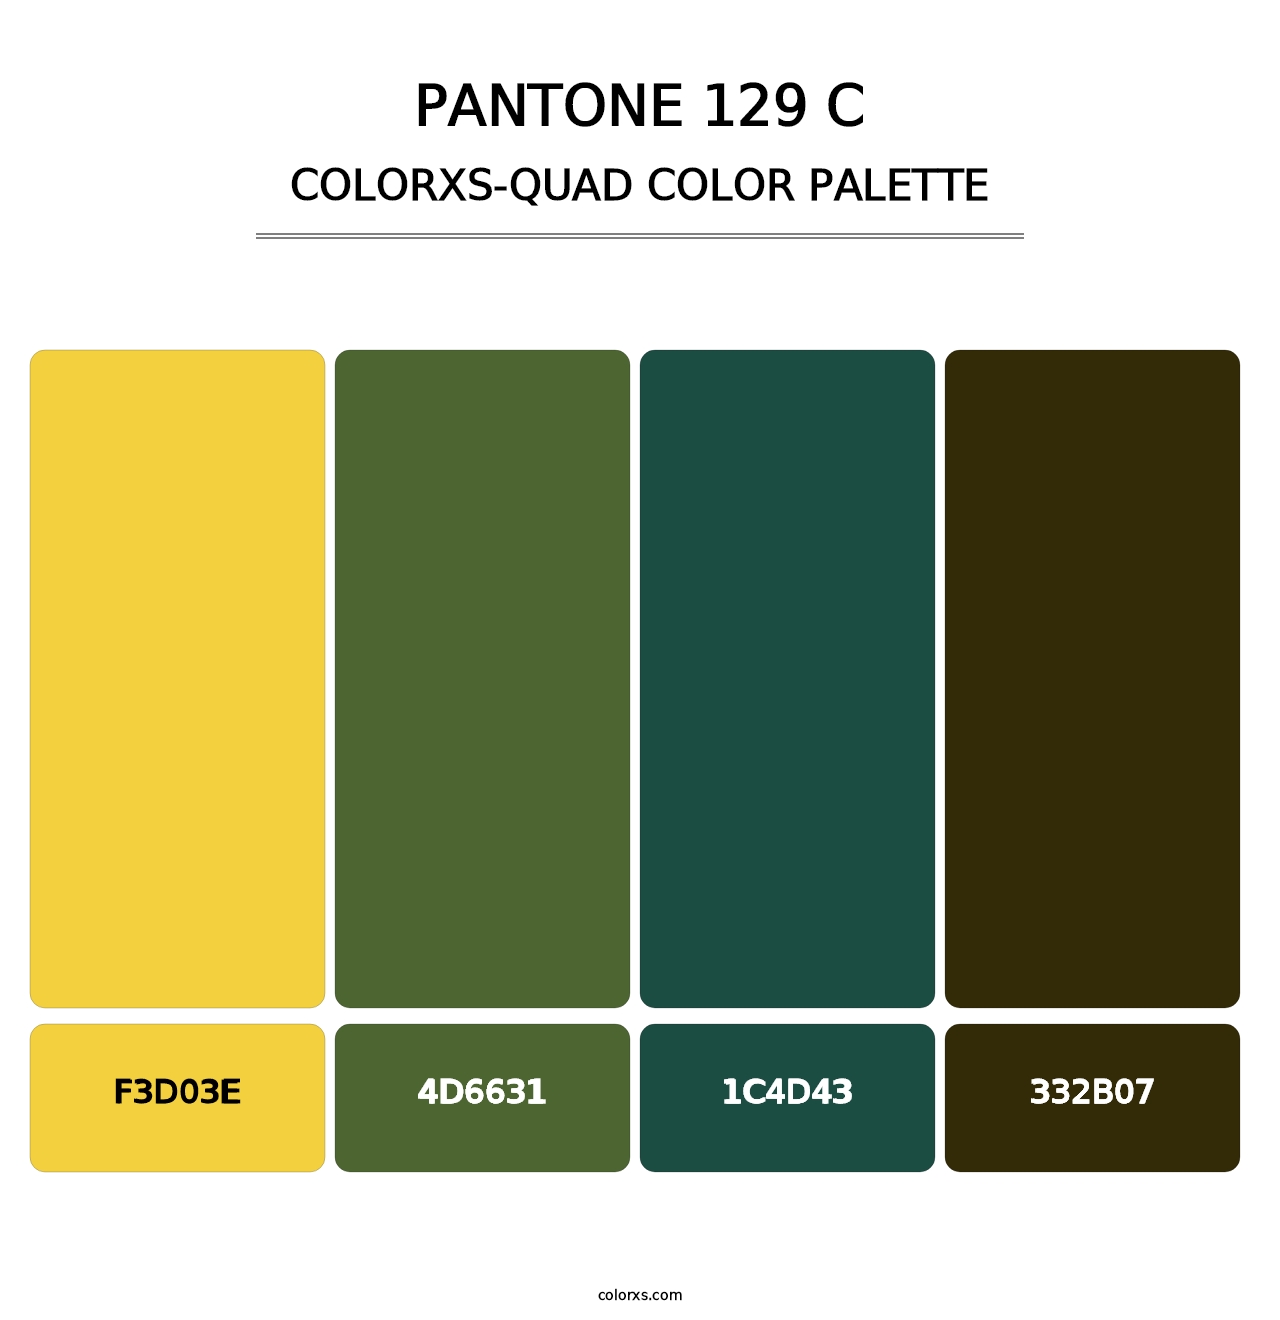 PANTONE 129 C - Colorxs Quad Palette